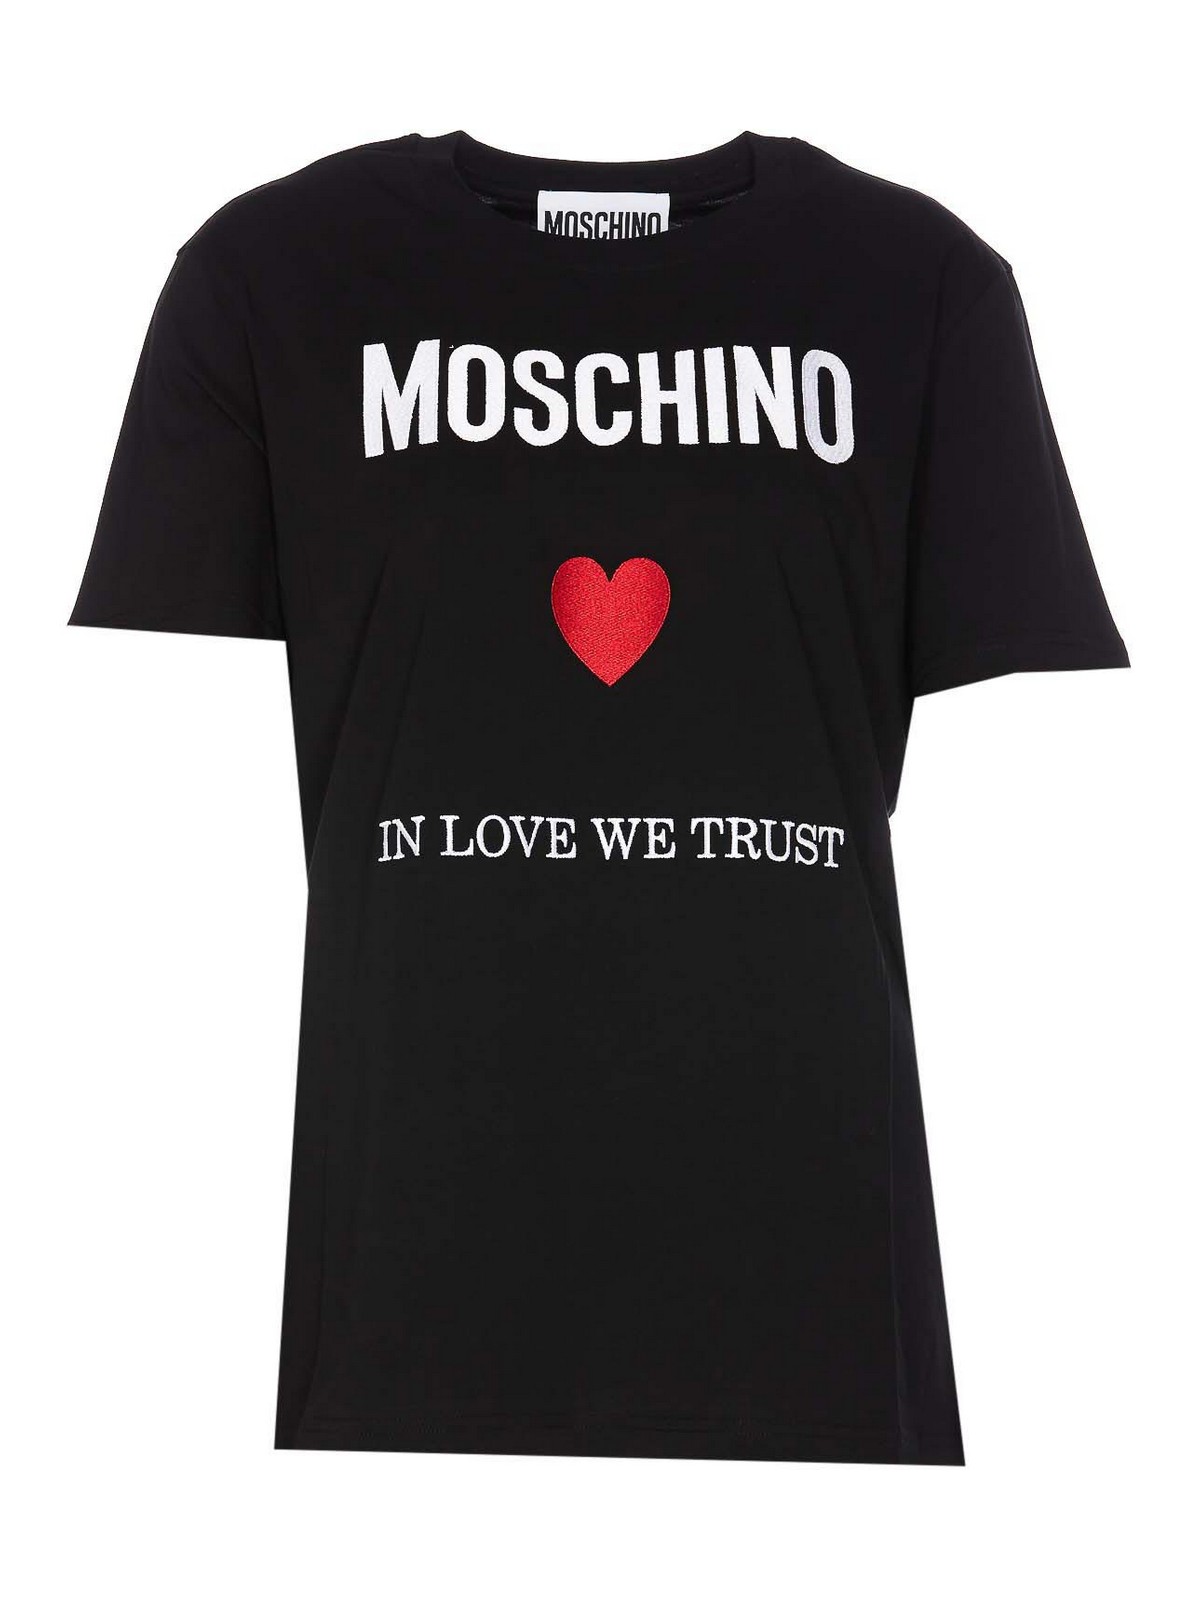 MOSCHINO LOVE WE TRUST T-SHIRT